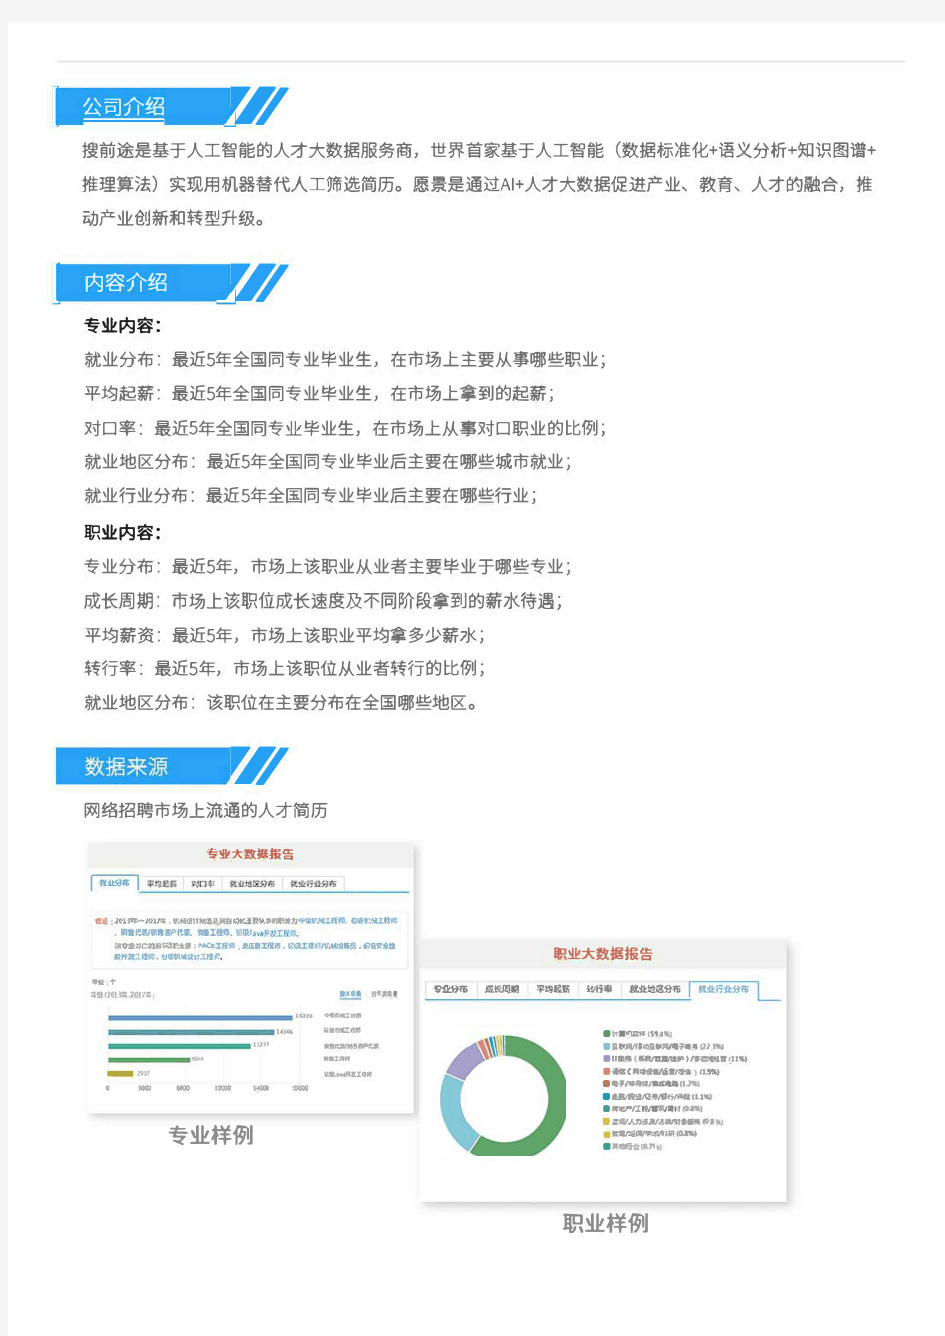 2013-2017年北京邮电大学自动化专业毕业生就业大数据报告